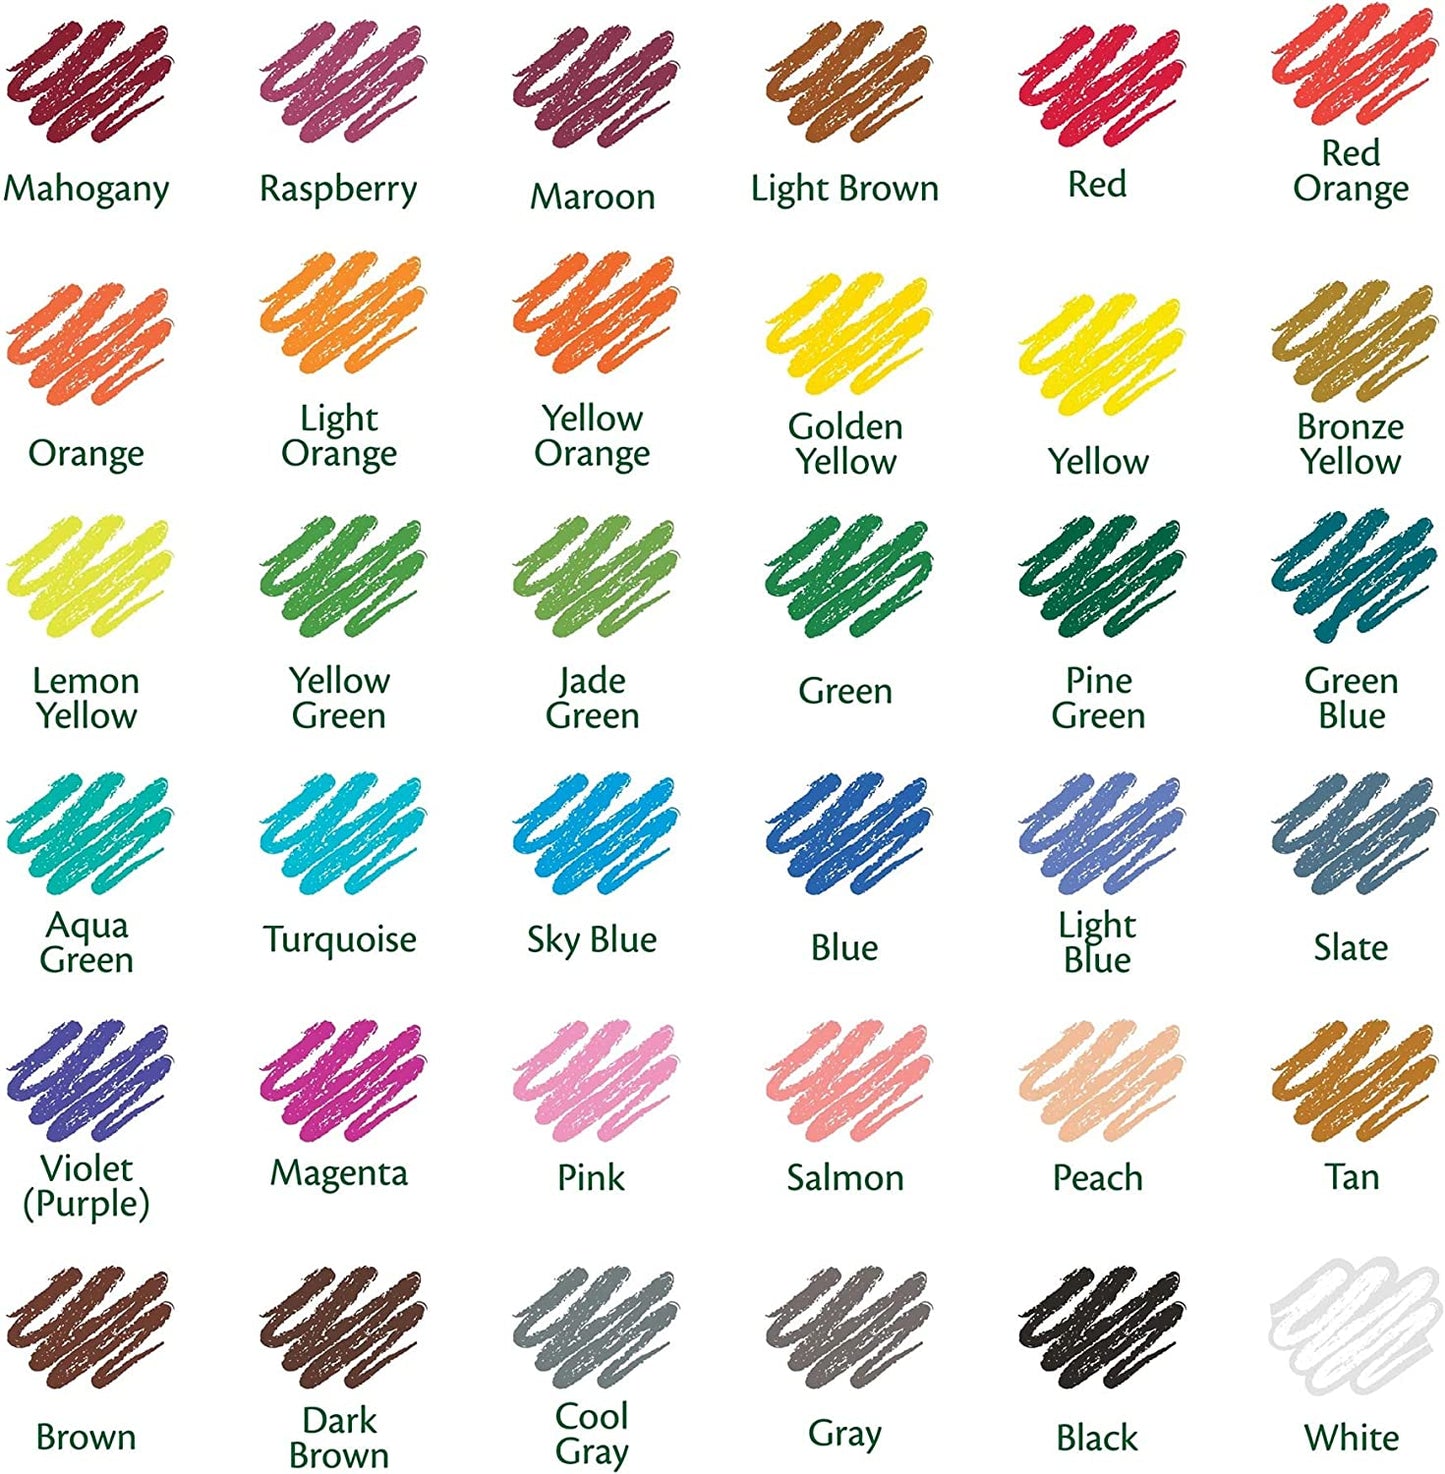 Crayola Juego de lápices de colores, colores surtidos, 36 unidades, largo